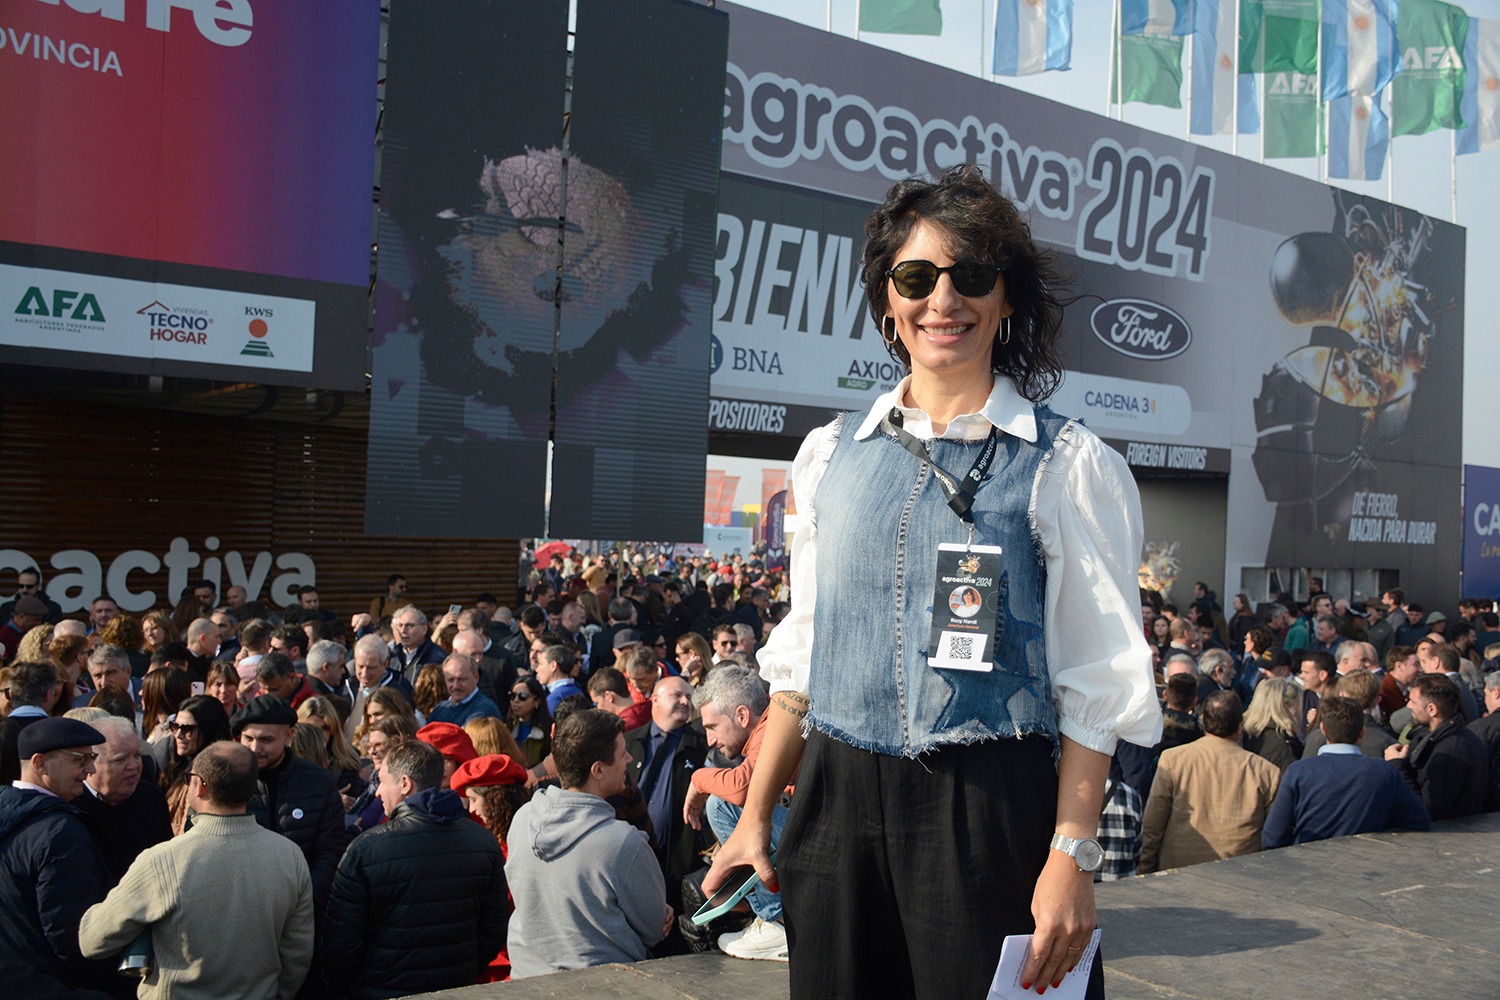 Rosy Nardi: Me quedo con el entusiasmo de miles y miles de personas que traspasaban el pórtico con una sonrisa en la cara